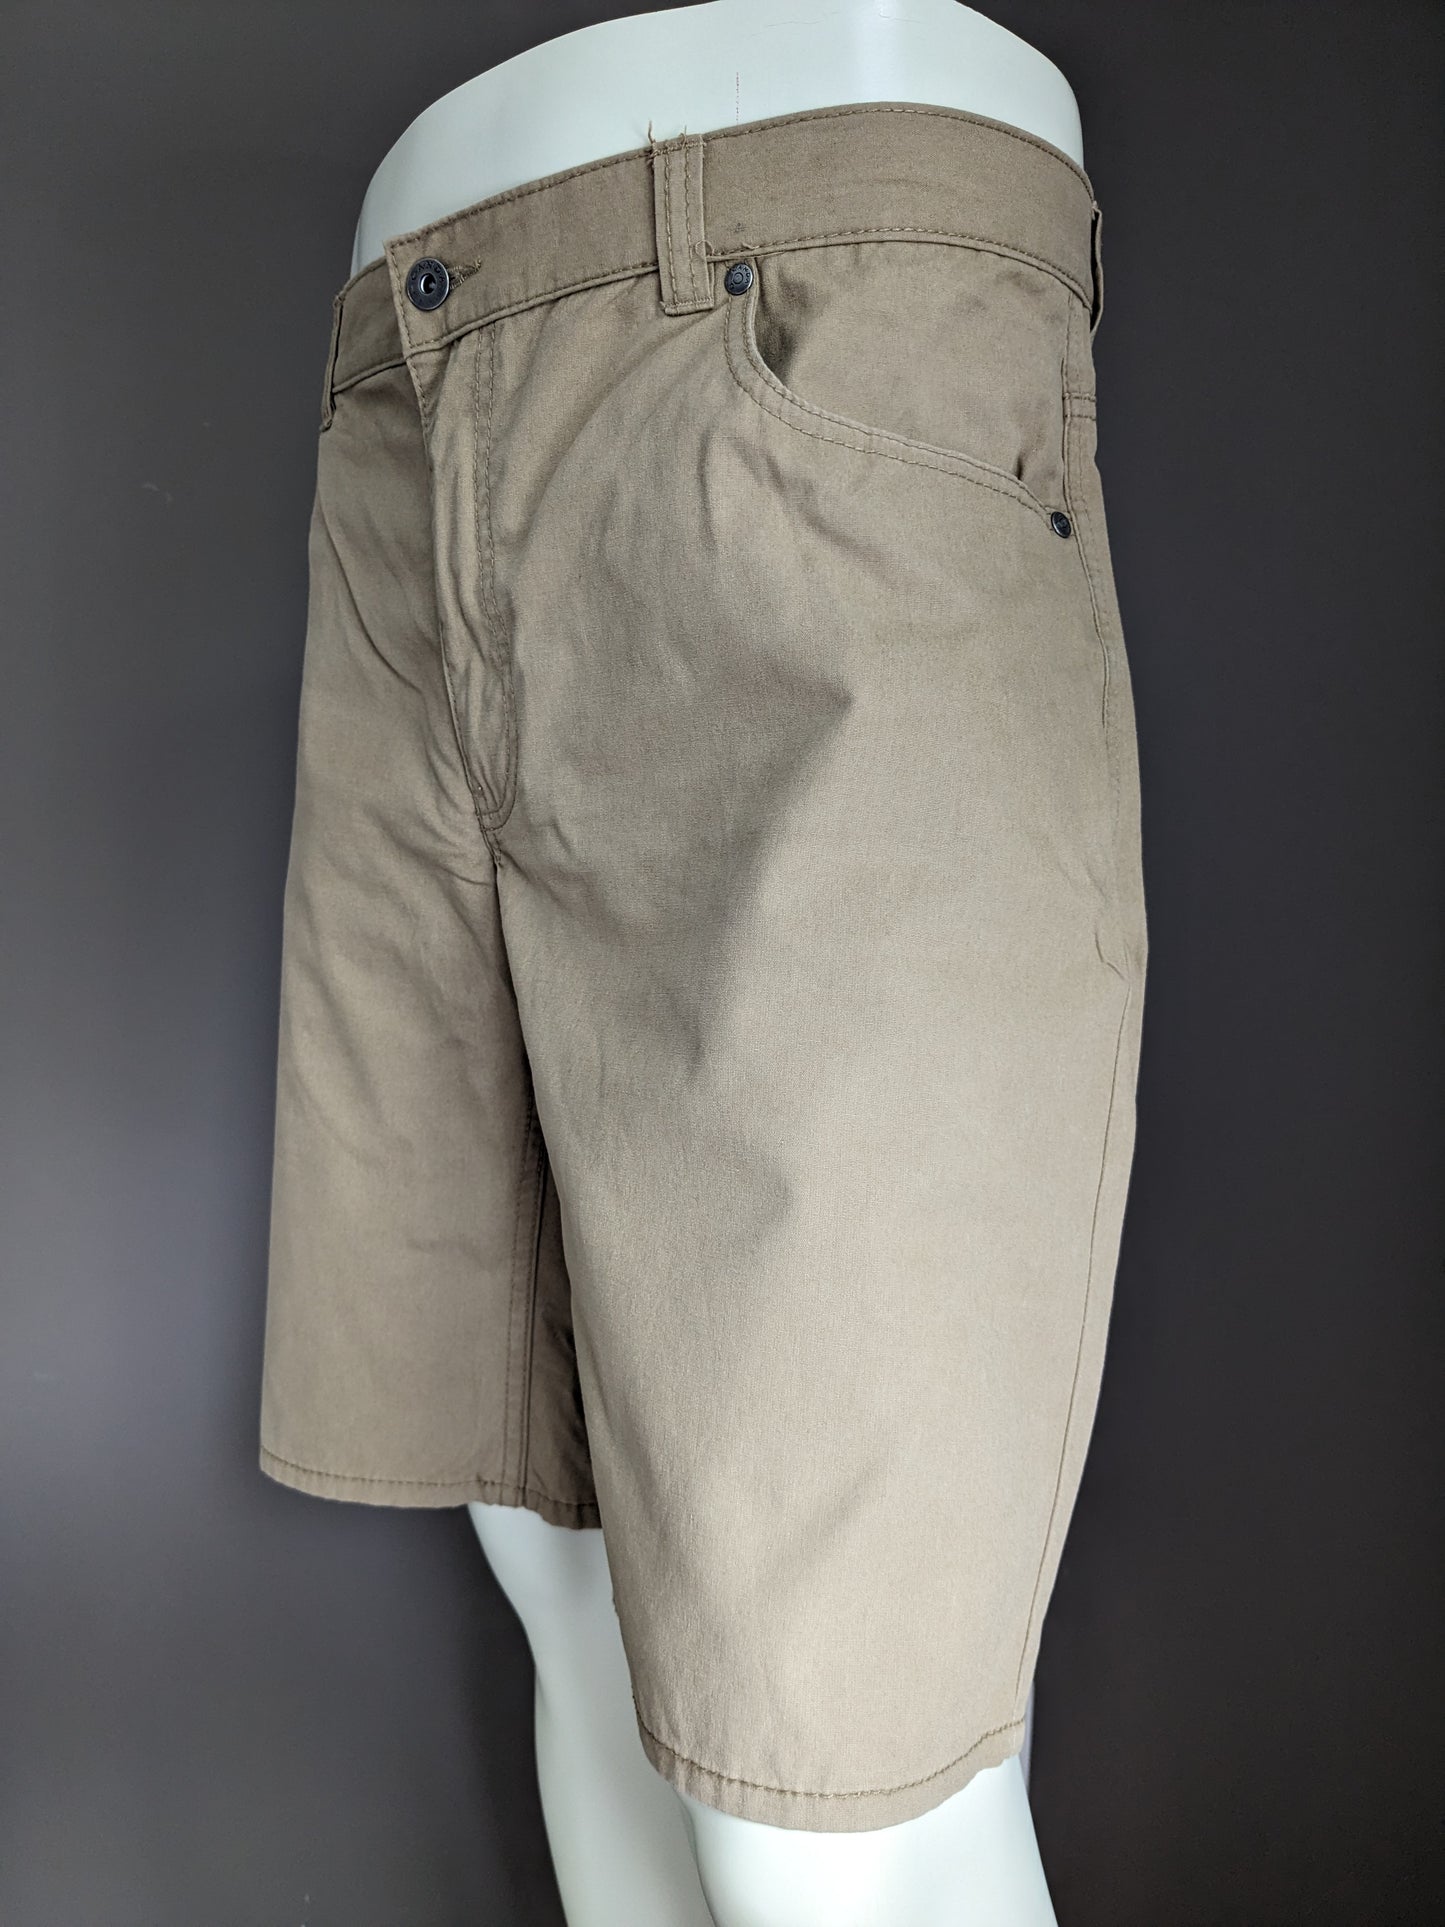 Pantalones cortos de Canda. Color marrón claro. Tamaño 58 / xl.